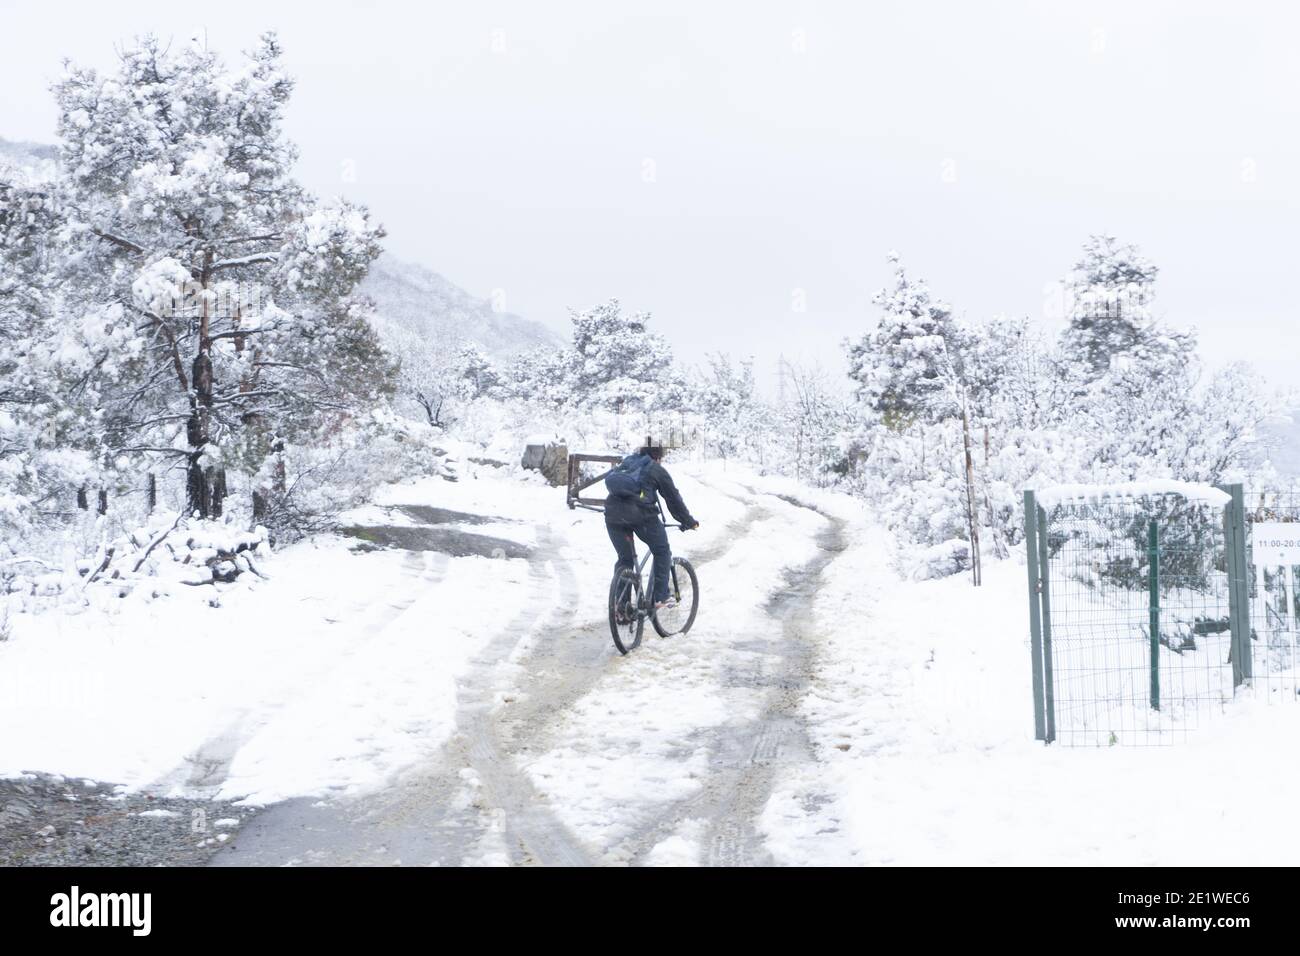 Ein junger Mann versucht, auf einer schneebedeckten Bergstraße mit dem Fahrrad zu fahren. Klimawandel in einem warmen Land, eine unerwartete Katastrophe. Stockfoto